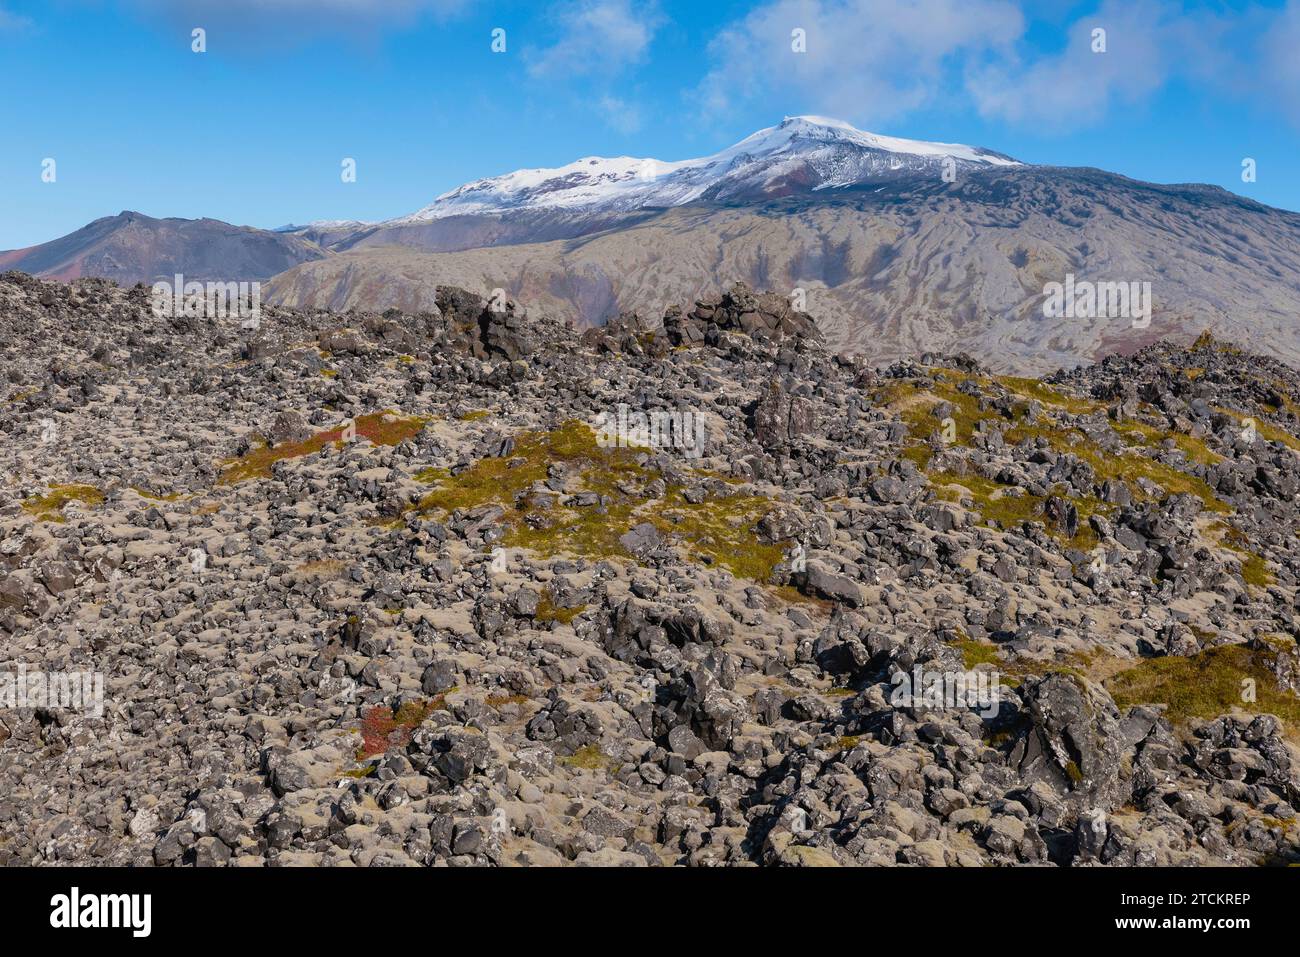 Islanda, Parco nazionale della penisola di Snæfellsnes, Snæfellsjökull, uno stratovulcano di 700 000 anni, ricoperto da un ghiacciaio, con un campo di lava ricoperto di muschio in primo piano. Foto Stock